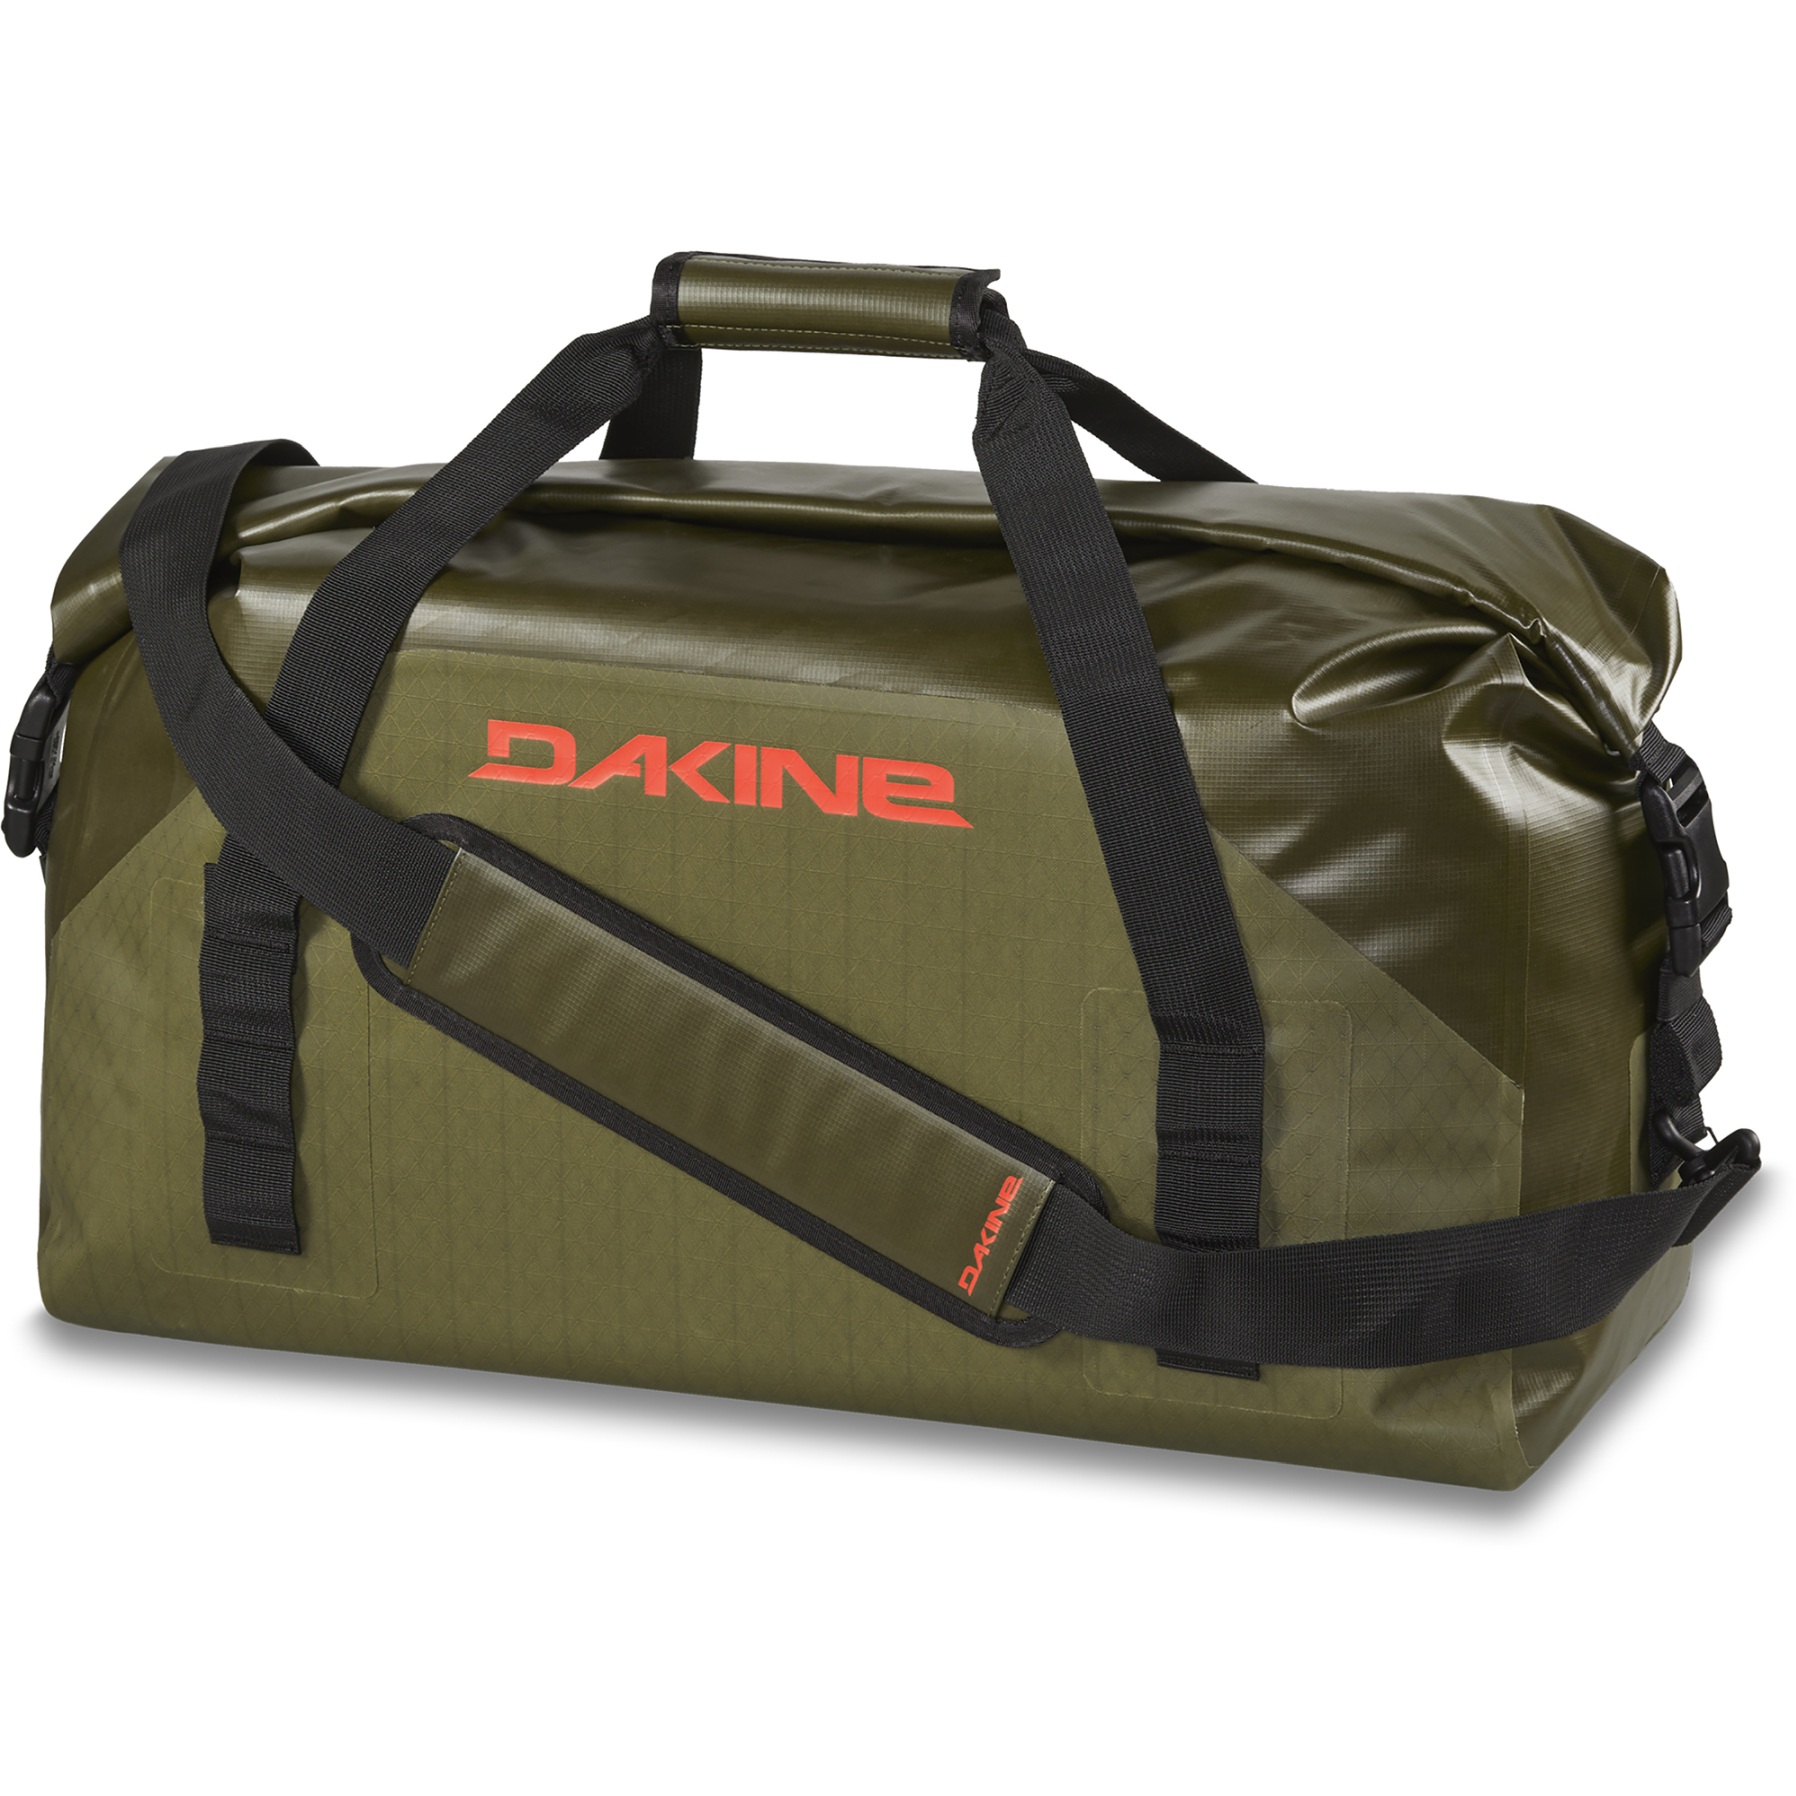 Bild von Dakine Cyclone Wet/Dry Rolltop Sporttasche 60L - dark olive